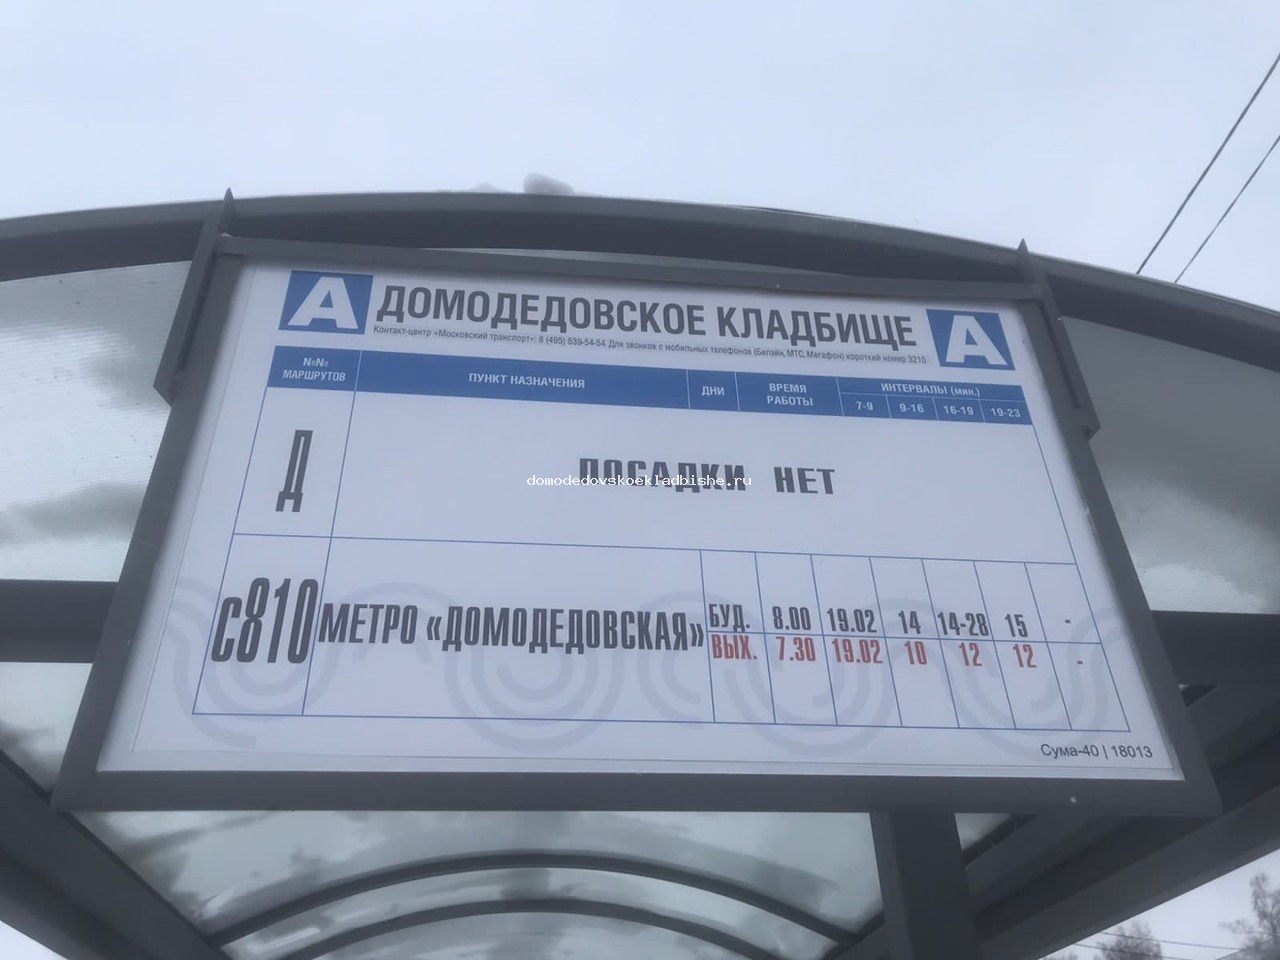 Расписание автобуса Домодедовское кладбище